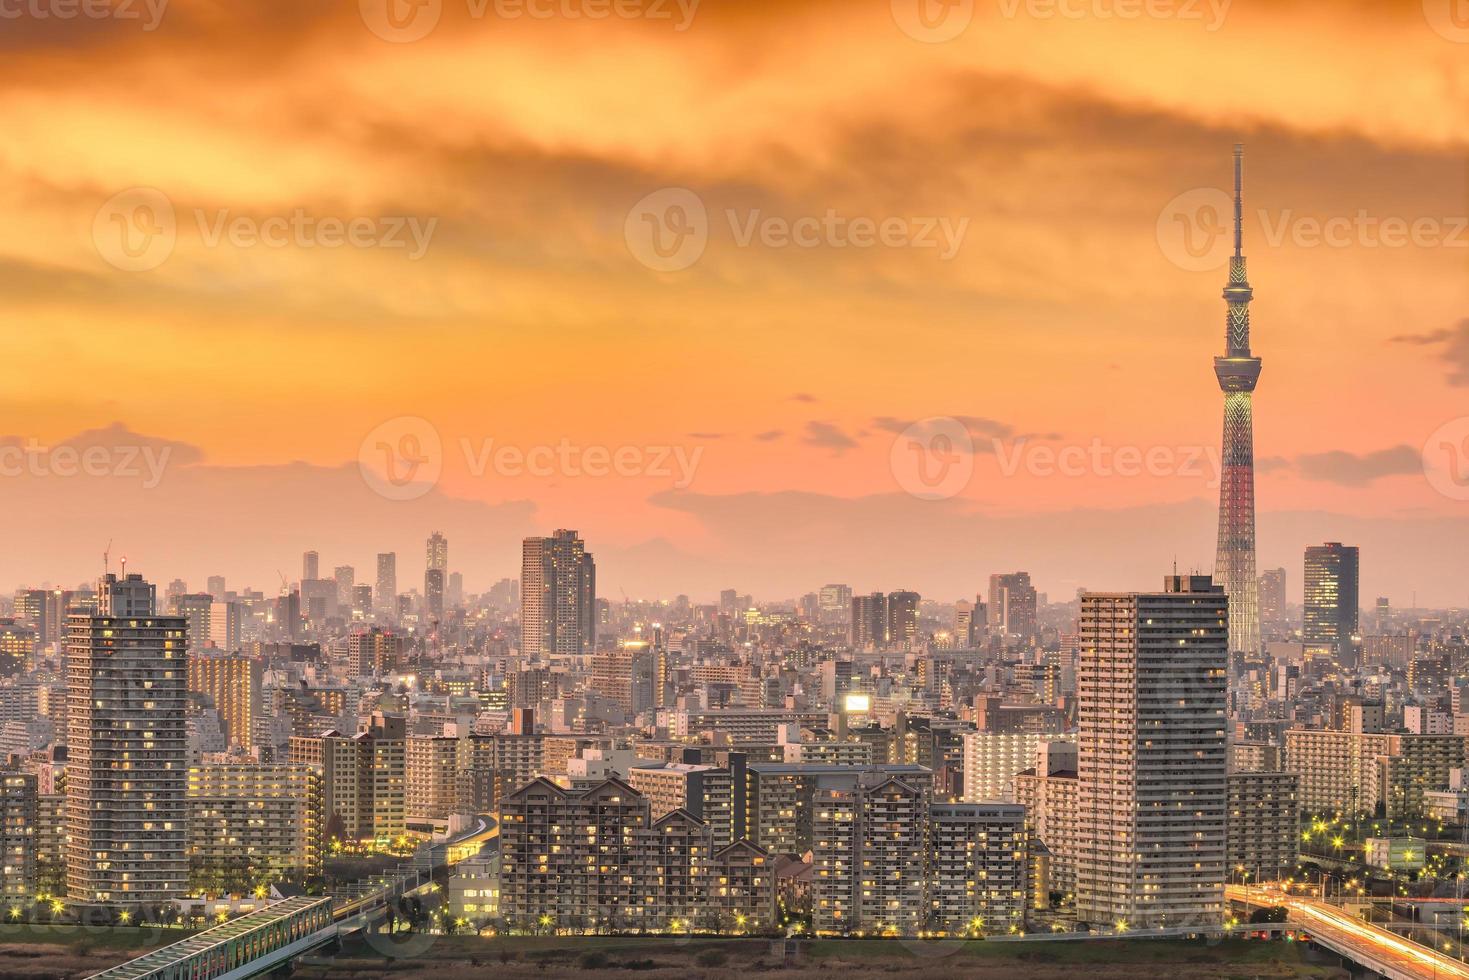 horizonte da cidade de Tóquio ao pôr do sol foto